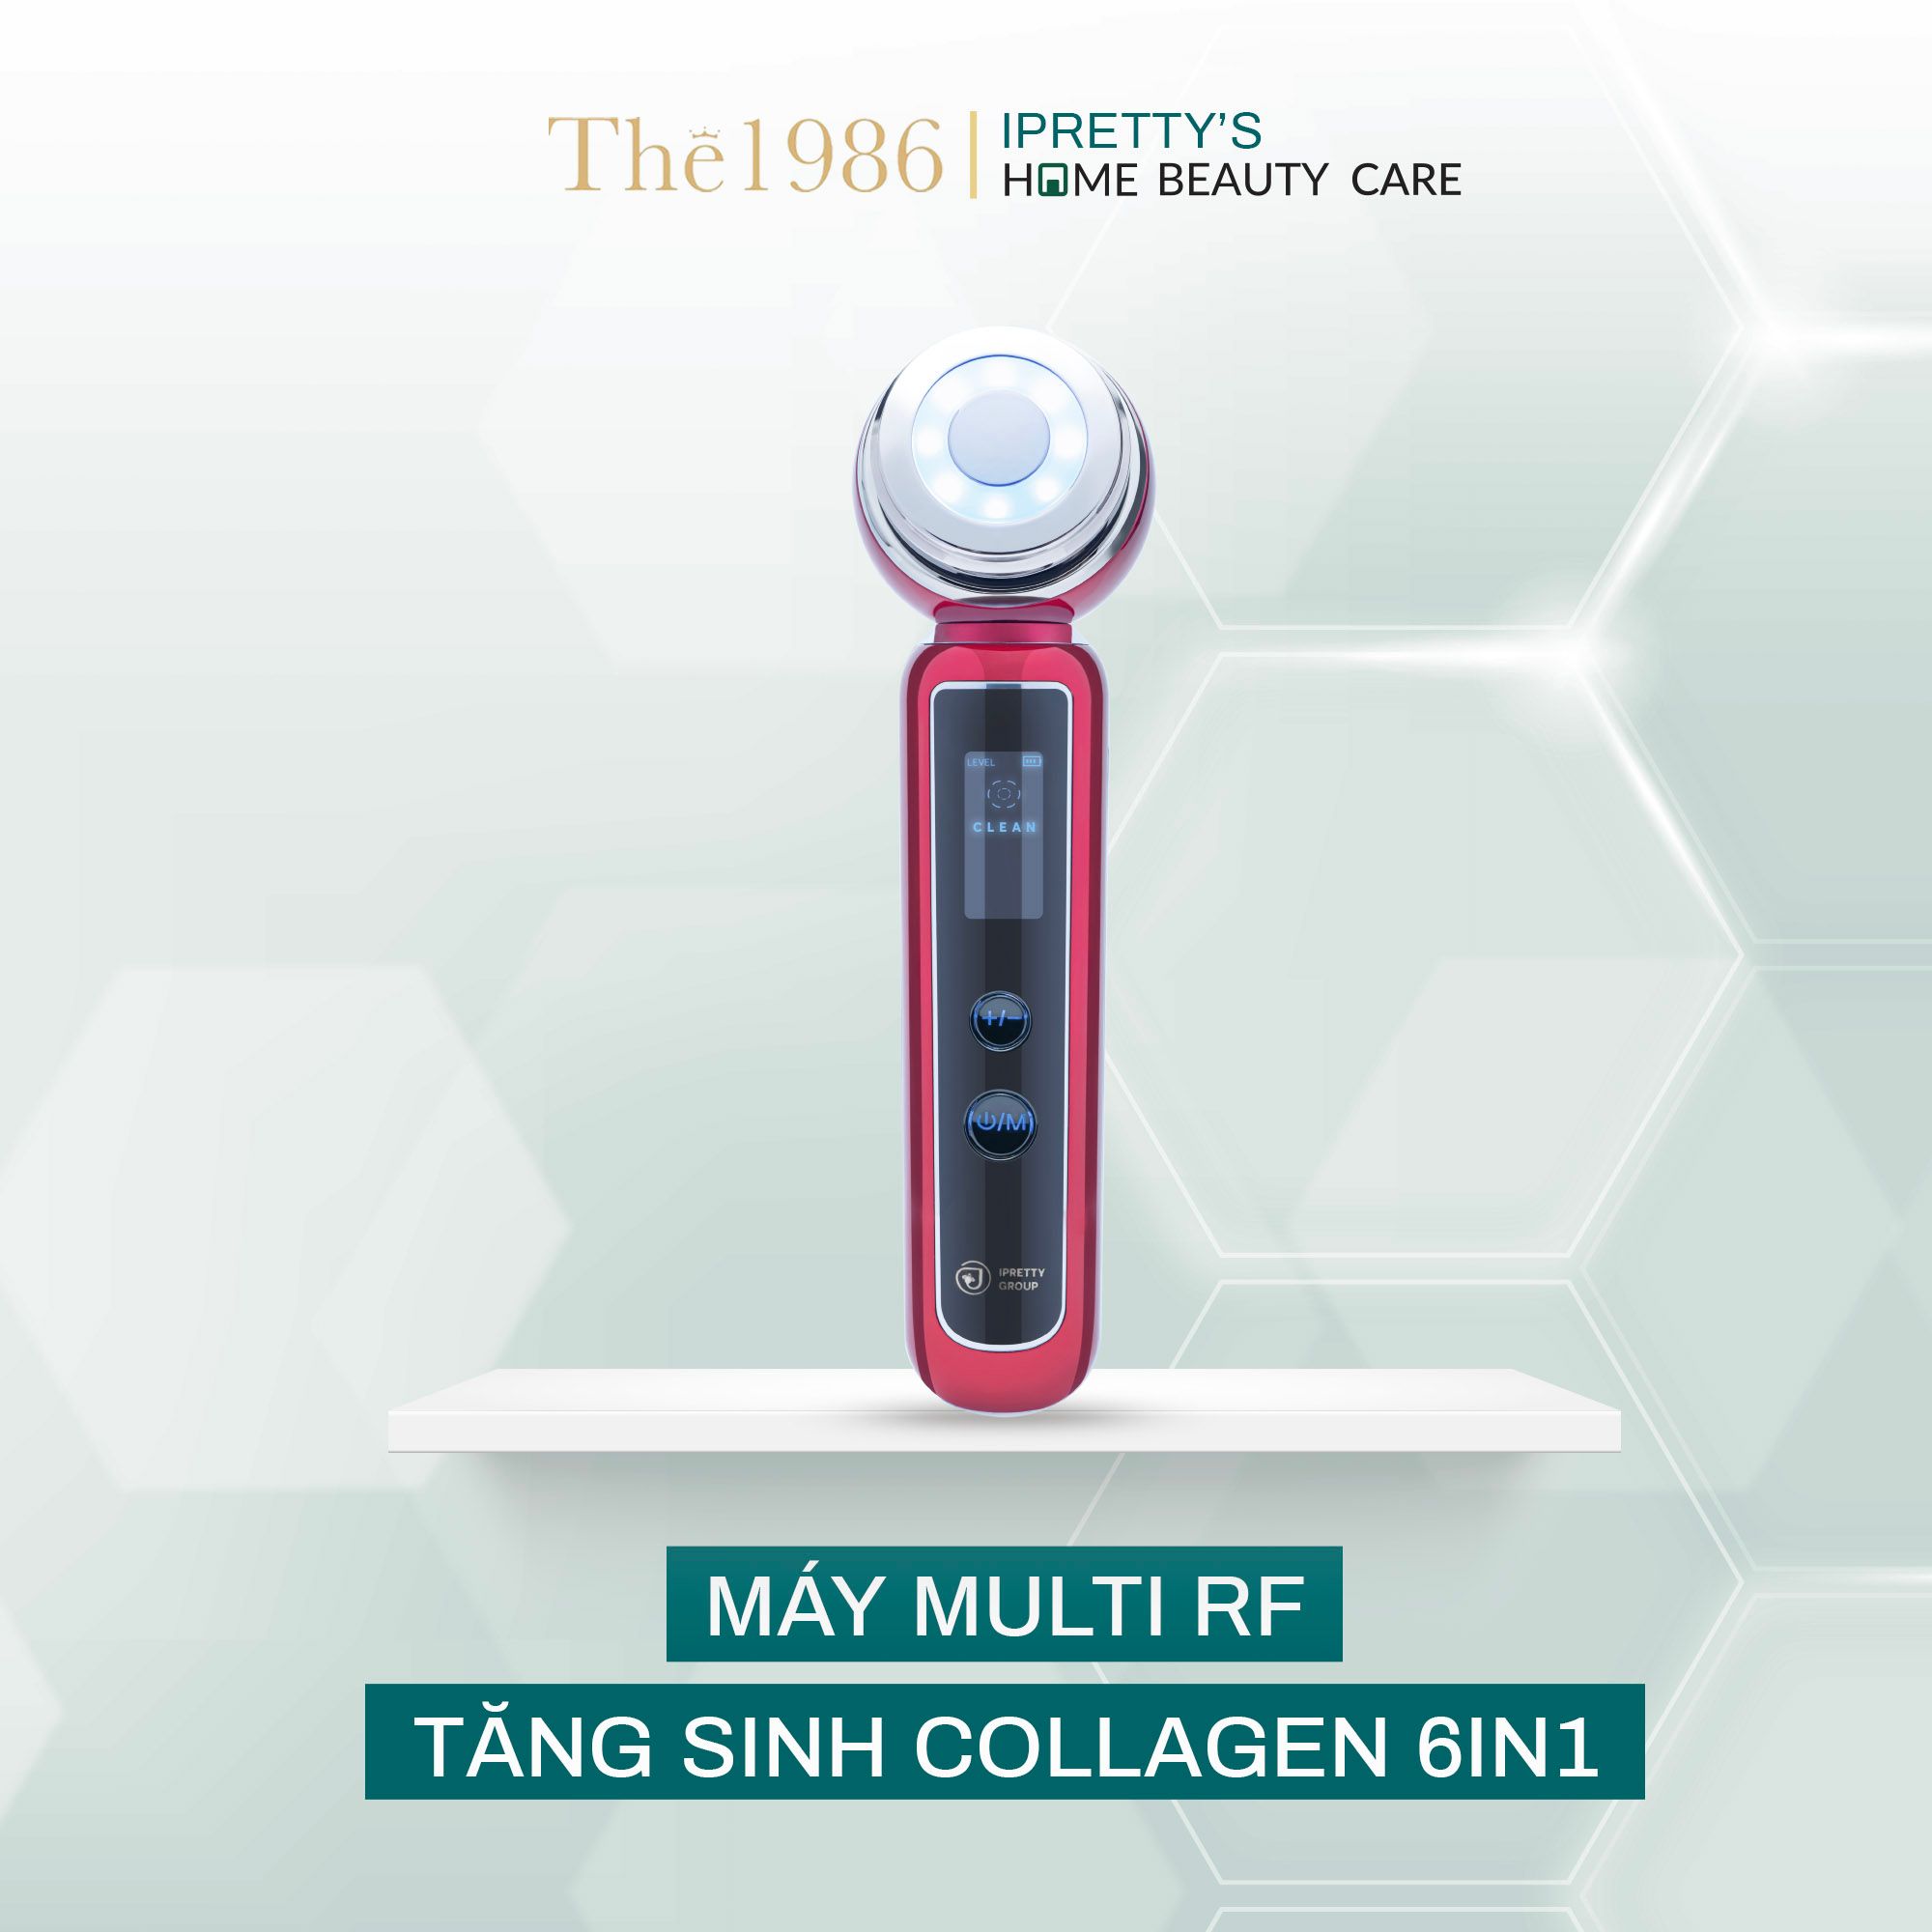  Máy tăng sinh collagen tự nhiên Ipretty’s Home Beauty Care Multi RF 6IN1 